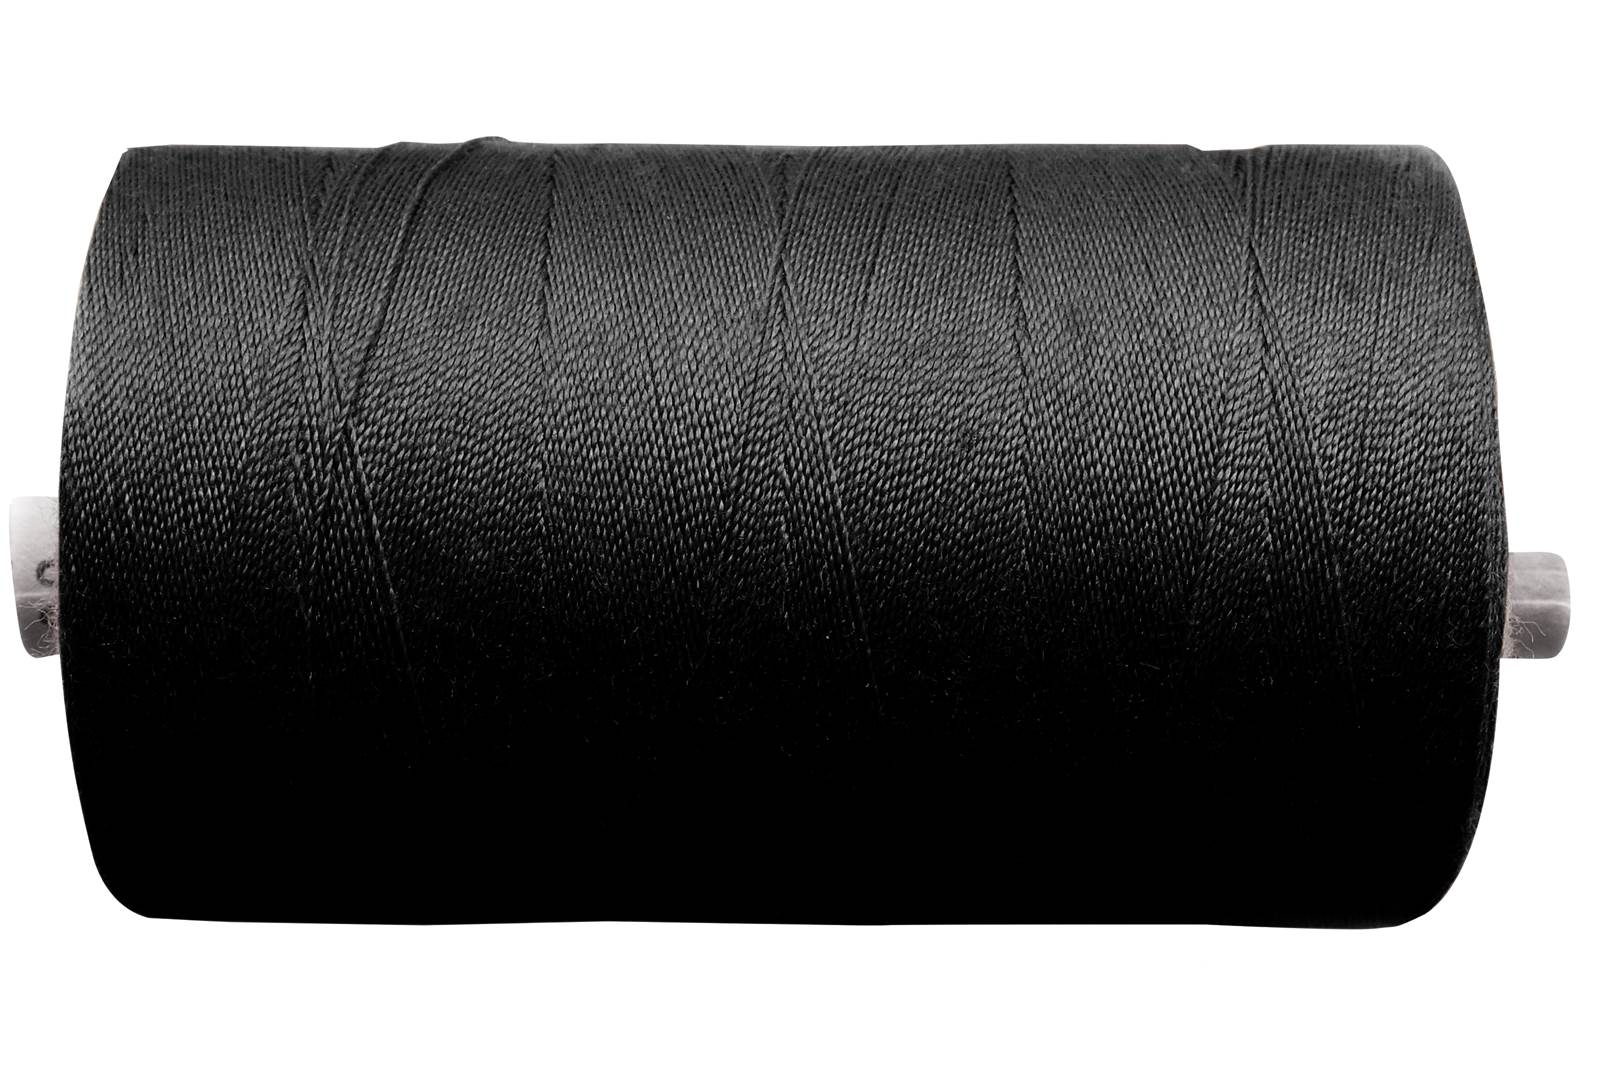 Linha de costura – Qualidade industrial 100 - Antracito